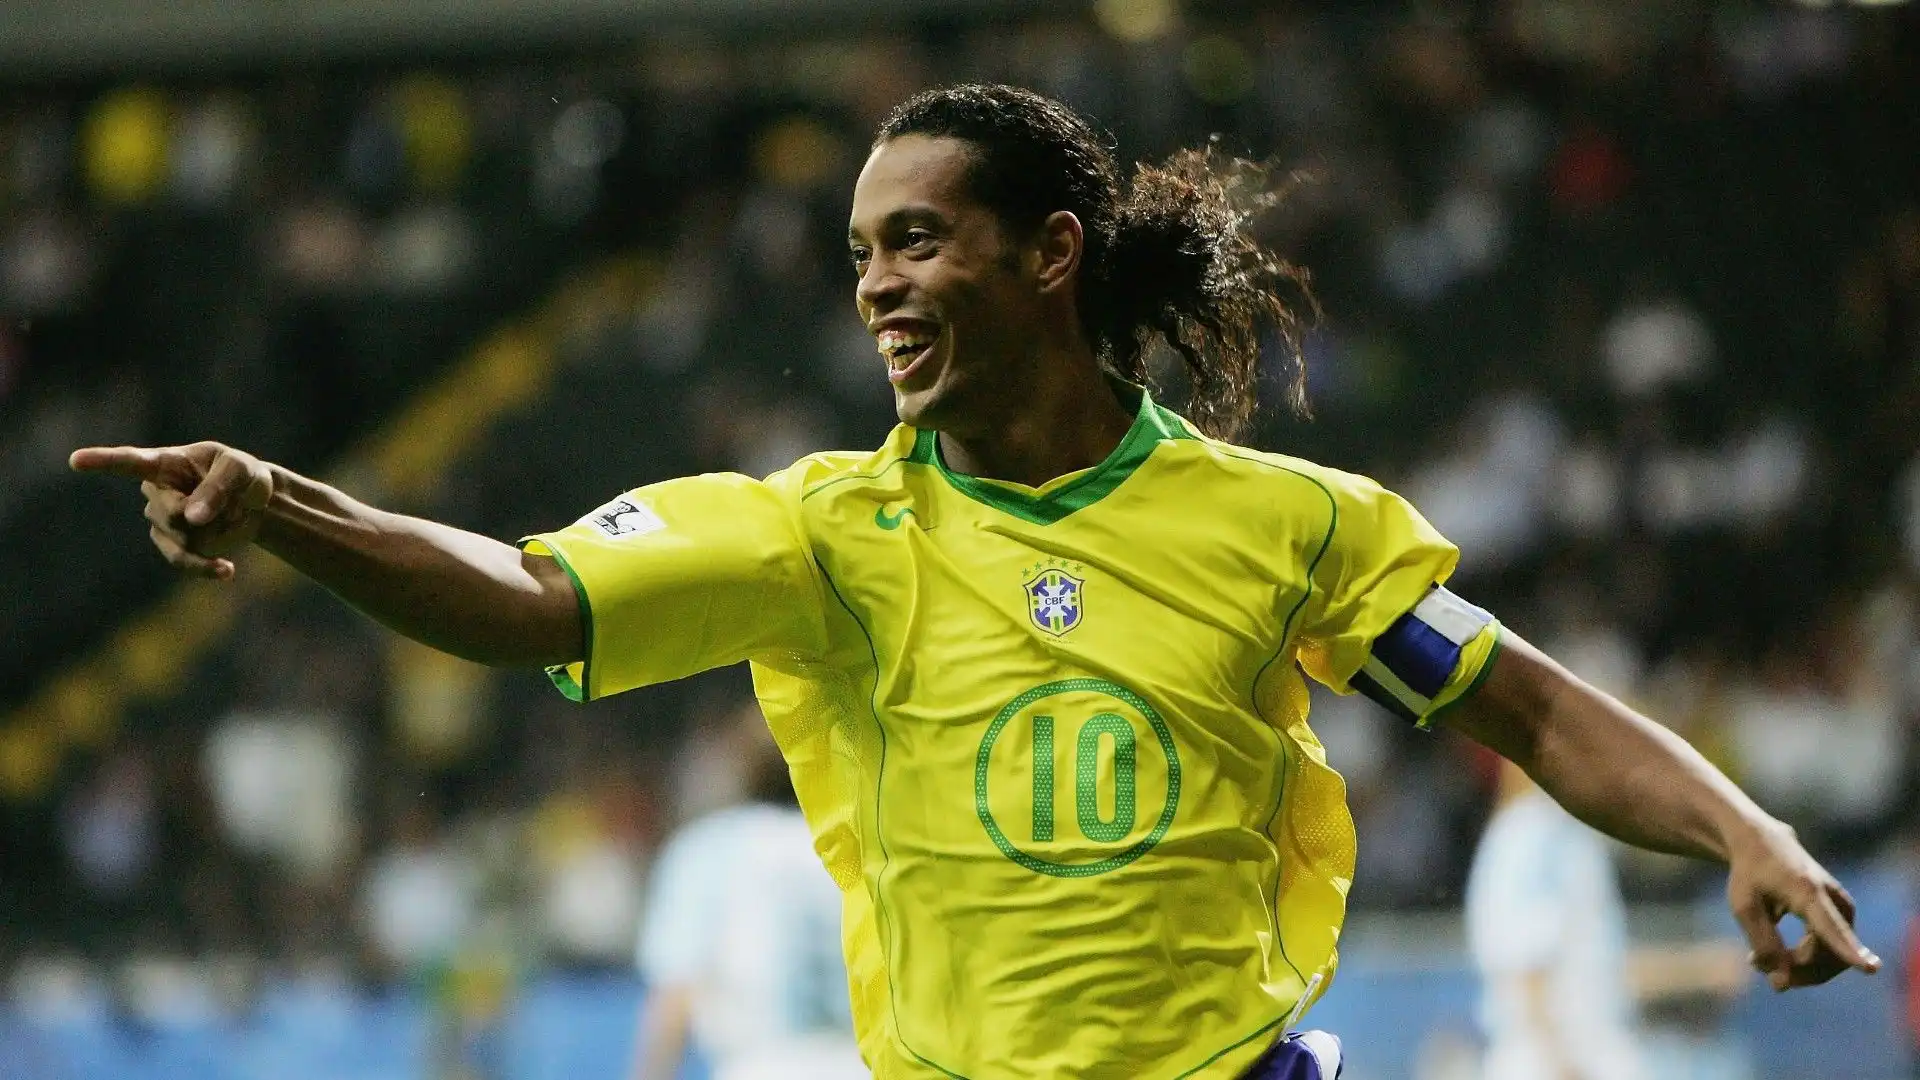 4- Ronaldinho